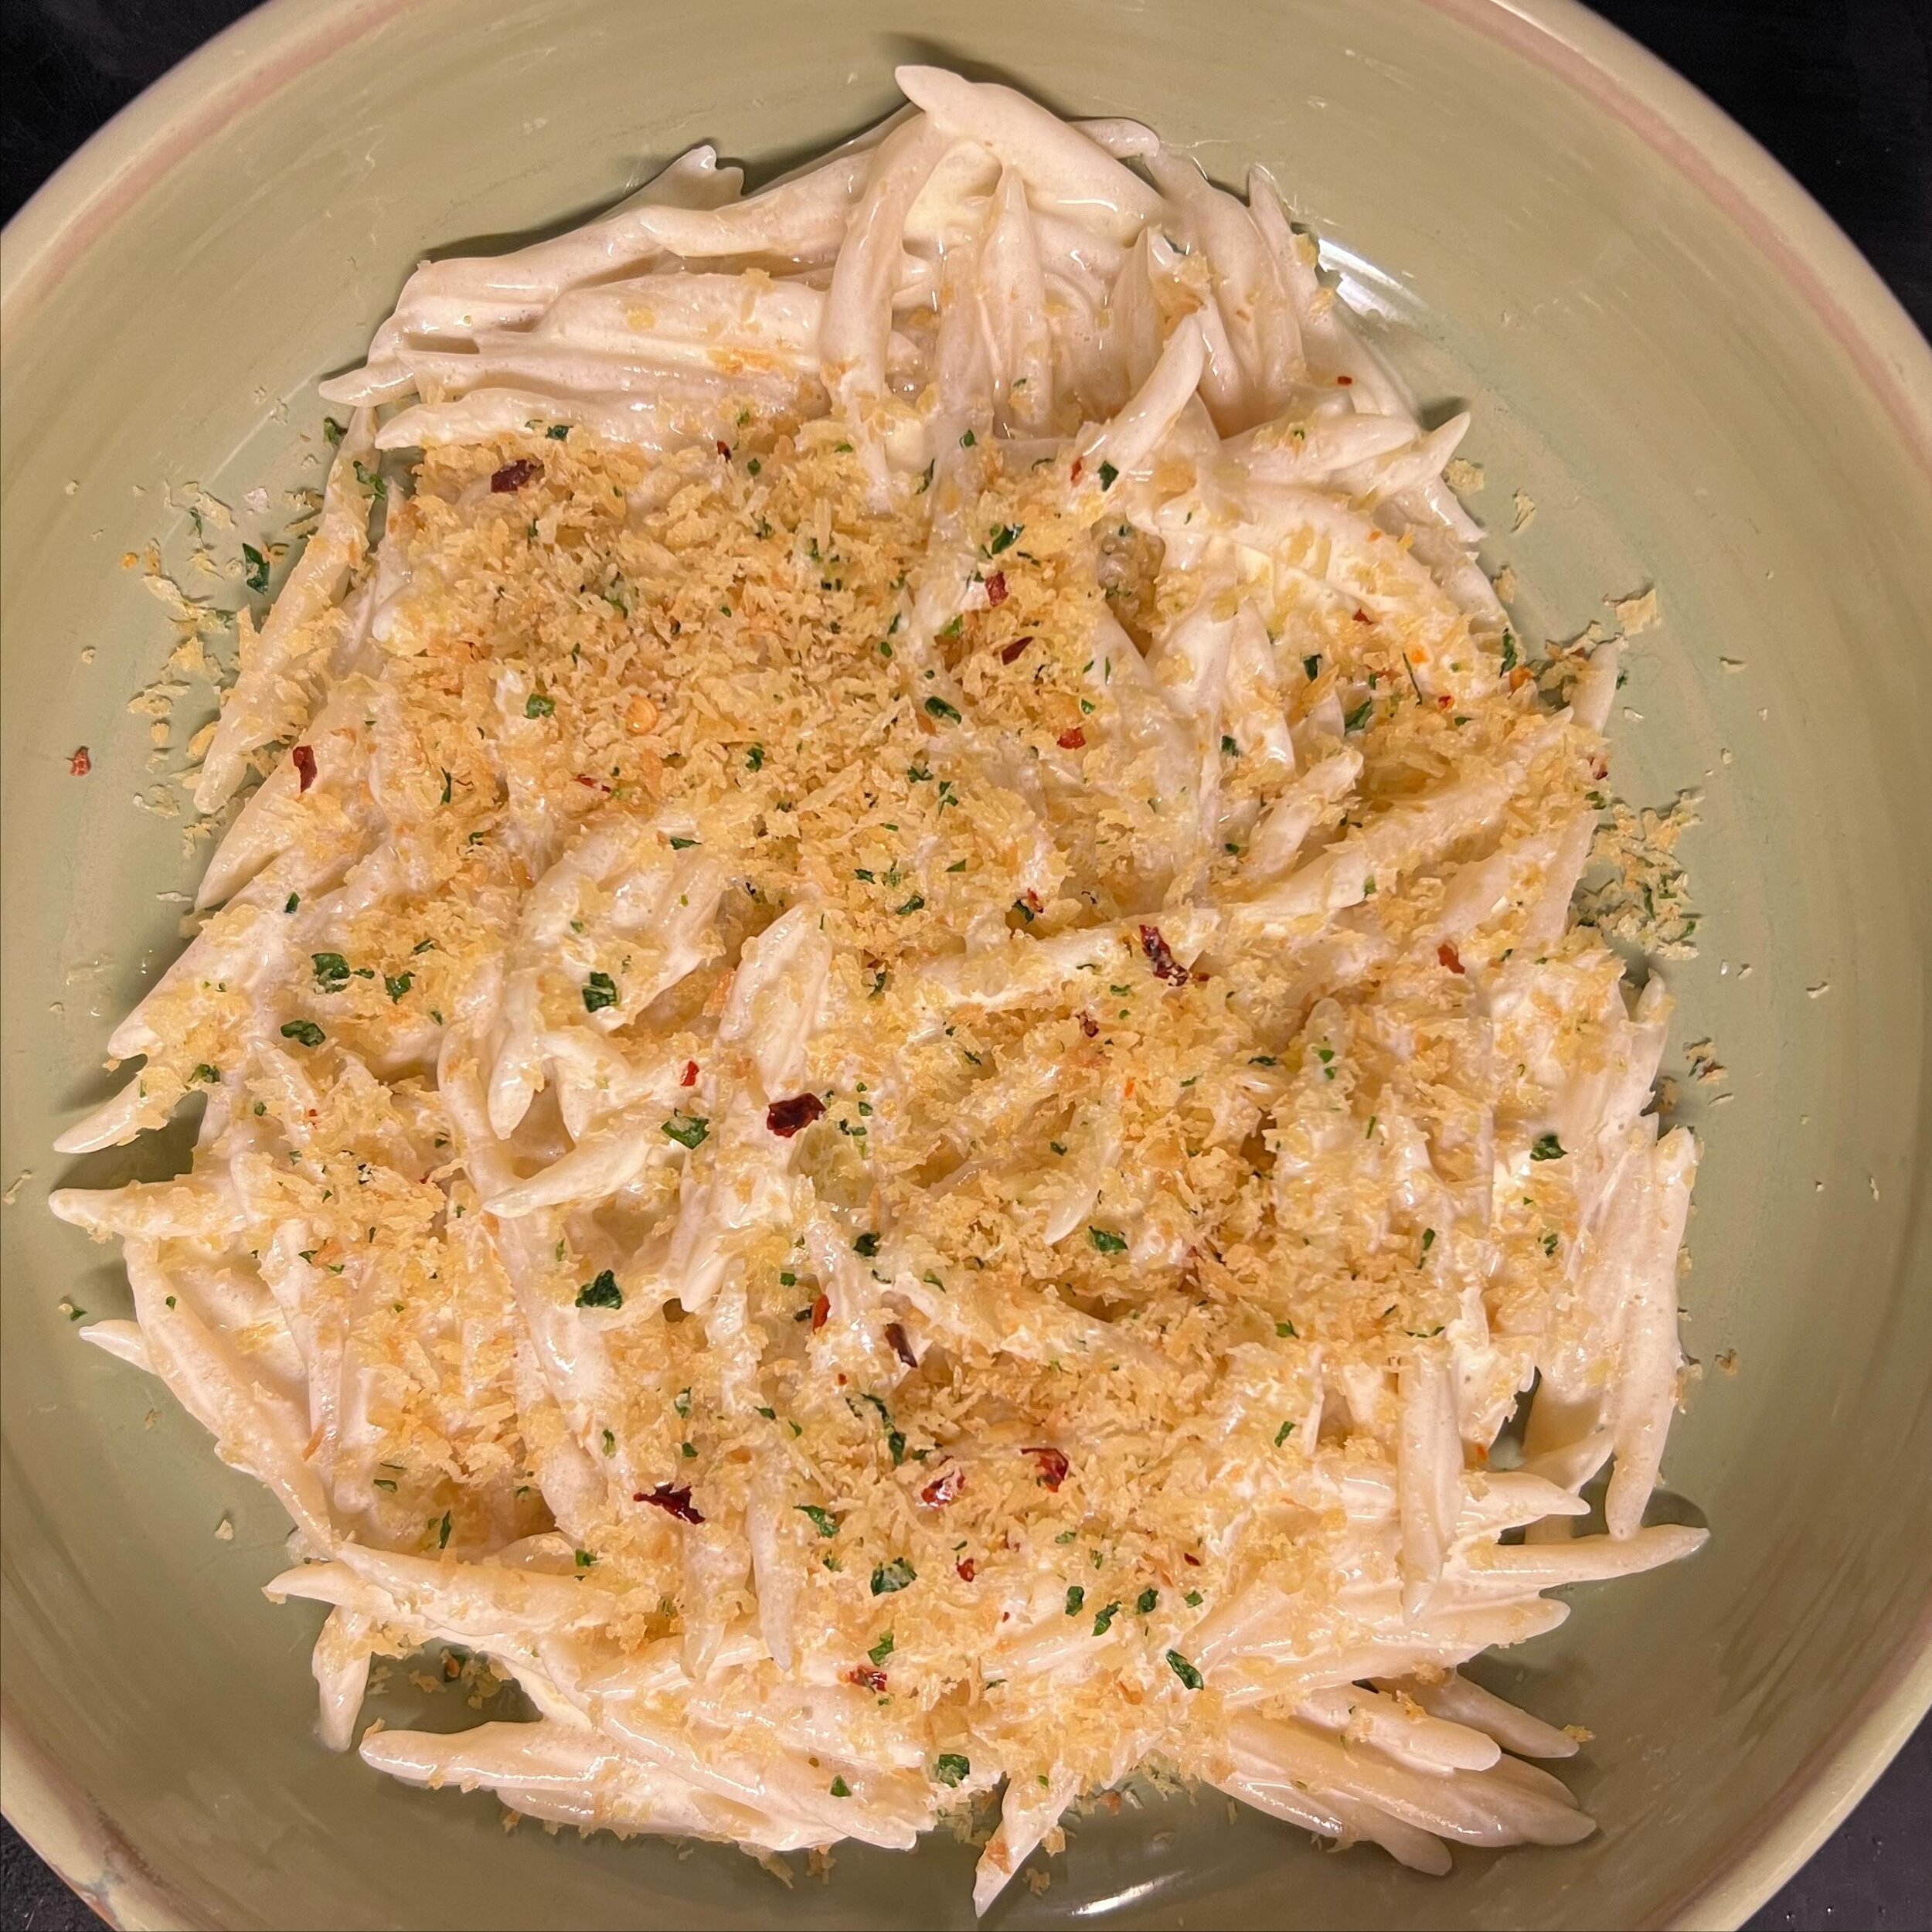 Und zu guter letzt von der noch aktuellen Karte unsere Pasta. Joghurt bissel Knoblauch und paar Br&ouml;sel.
#zurfischerin #pasta #pastalove #pastalovers🍝 #nudeln #food #foodblogger #foodphotography #instagram #instafood #restaurant #lindau